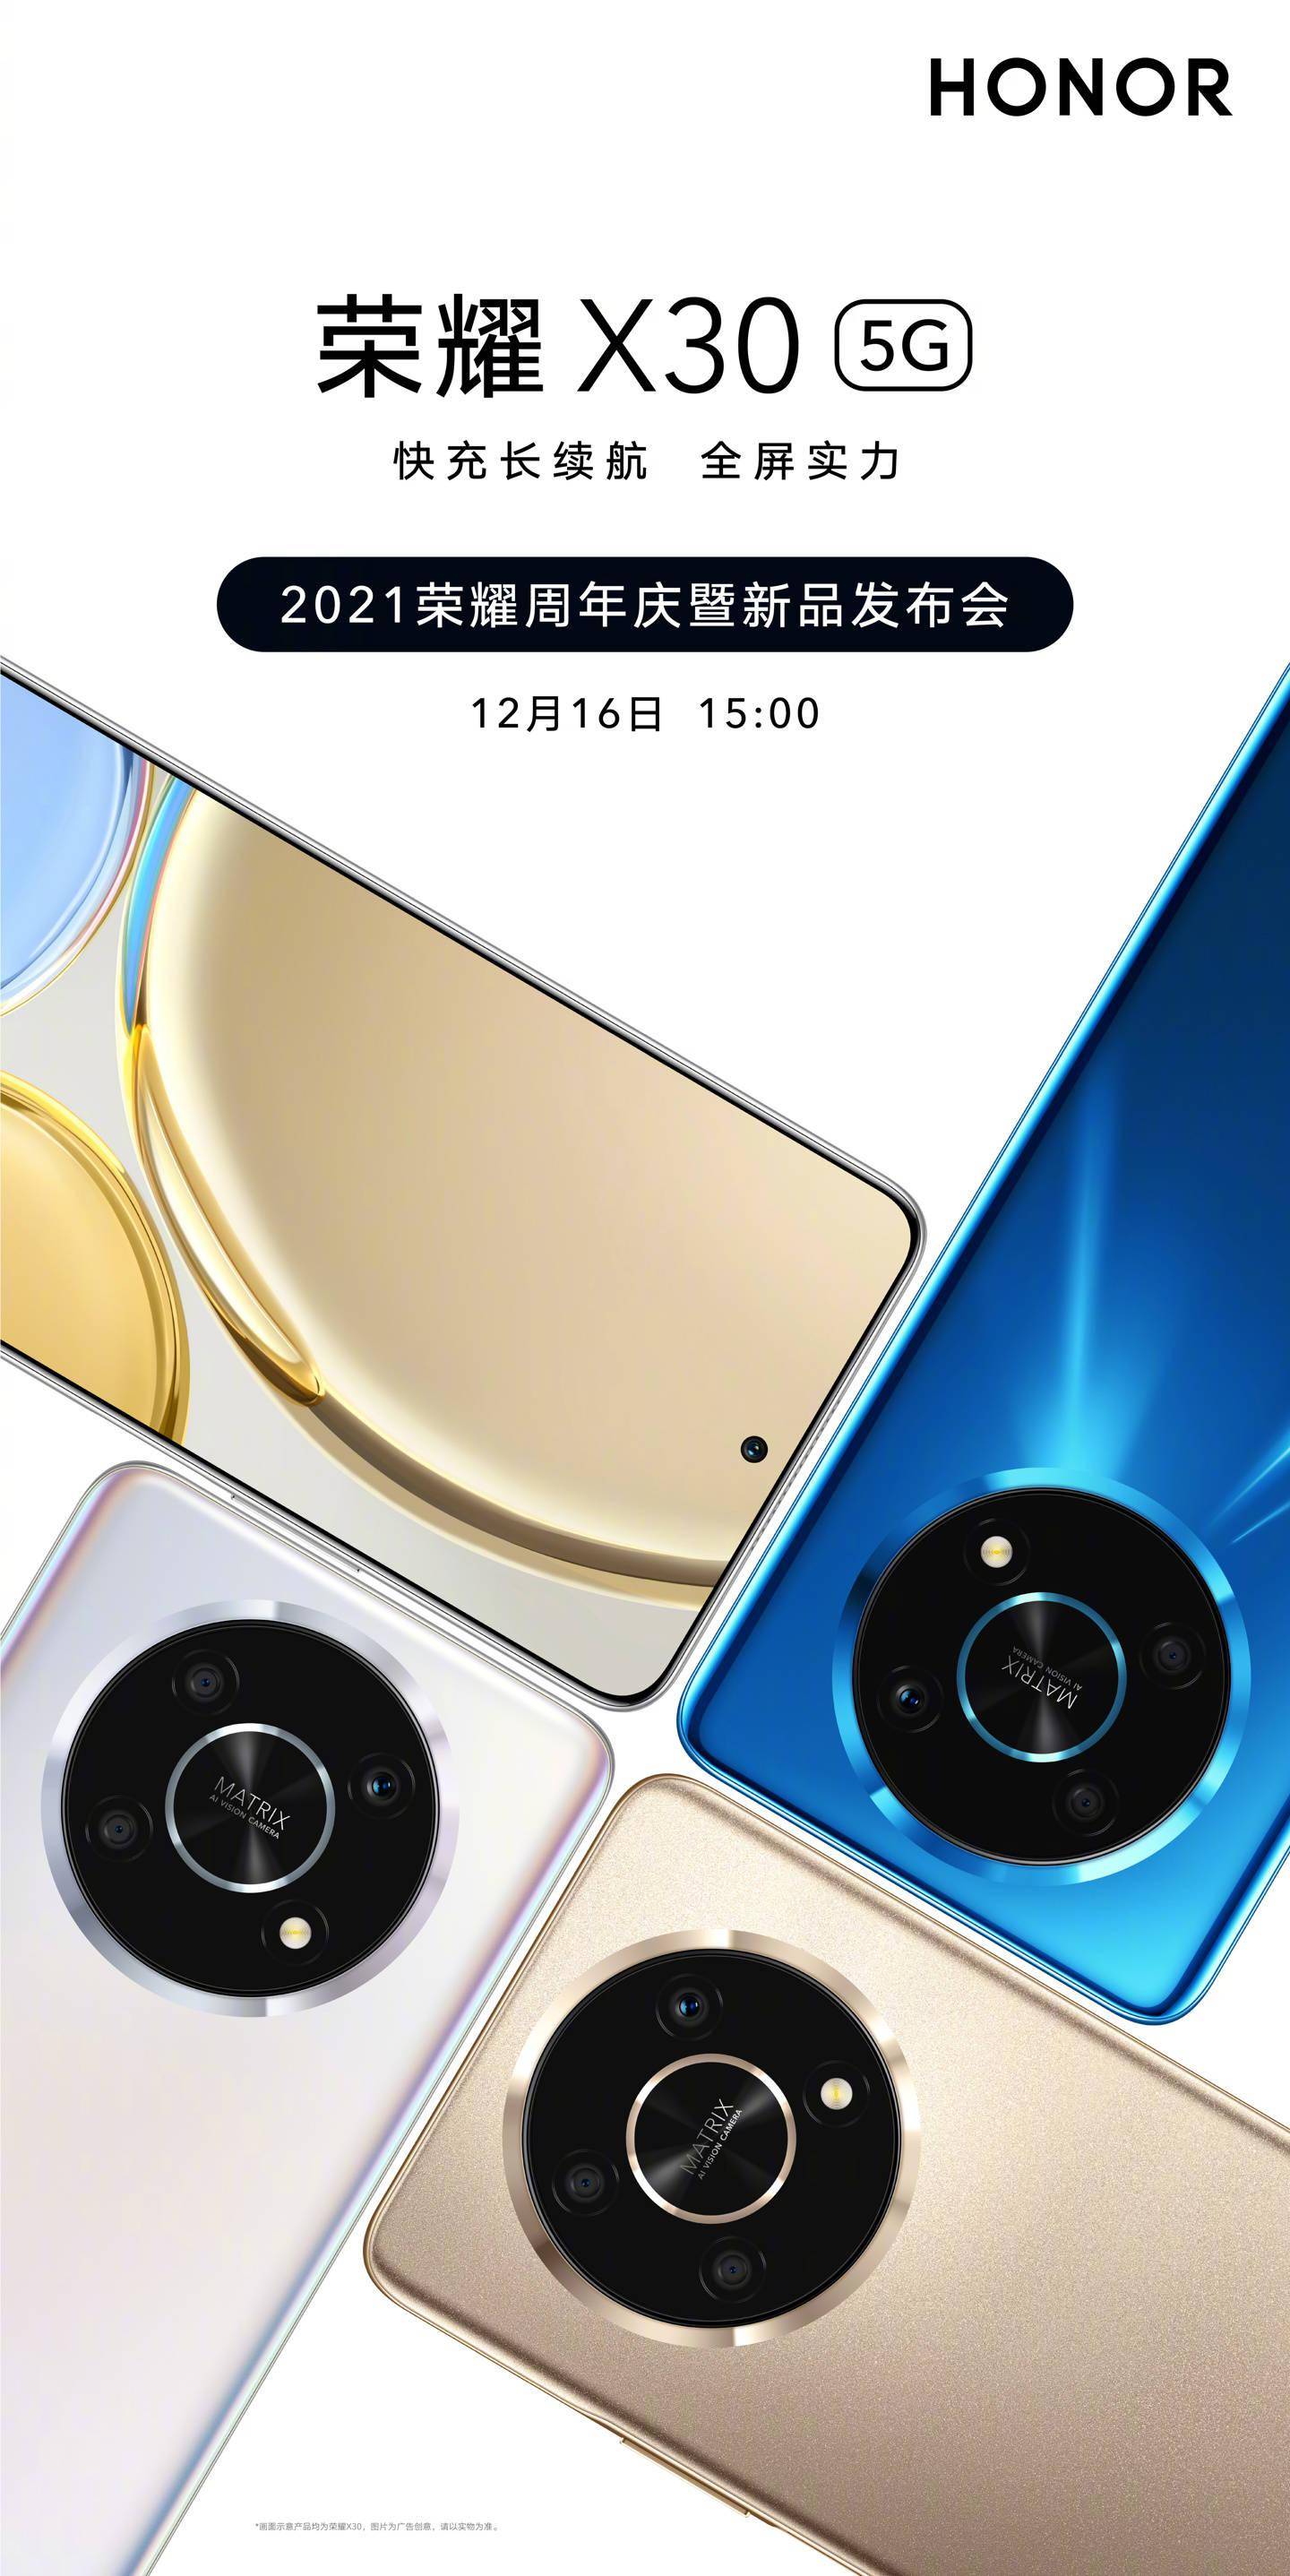 海报|荣耀 X30 新品手机上架京东预约：居中挖孔屏 + 背部圆环